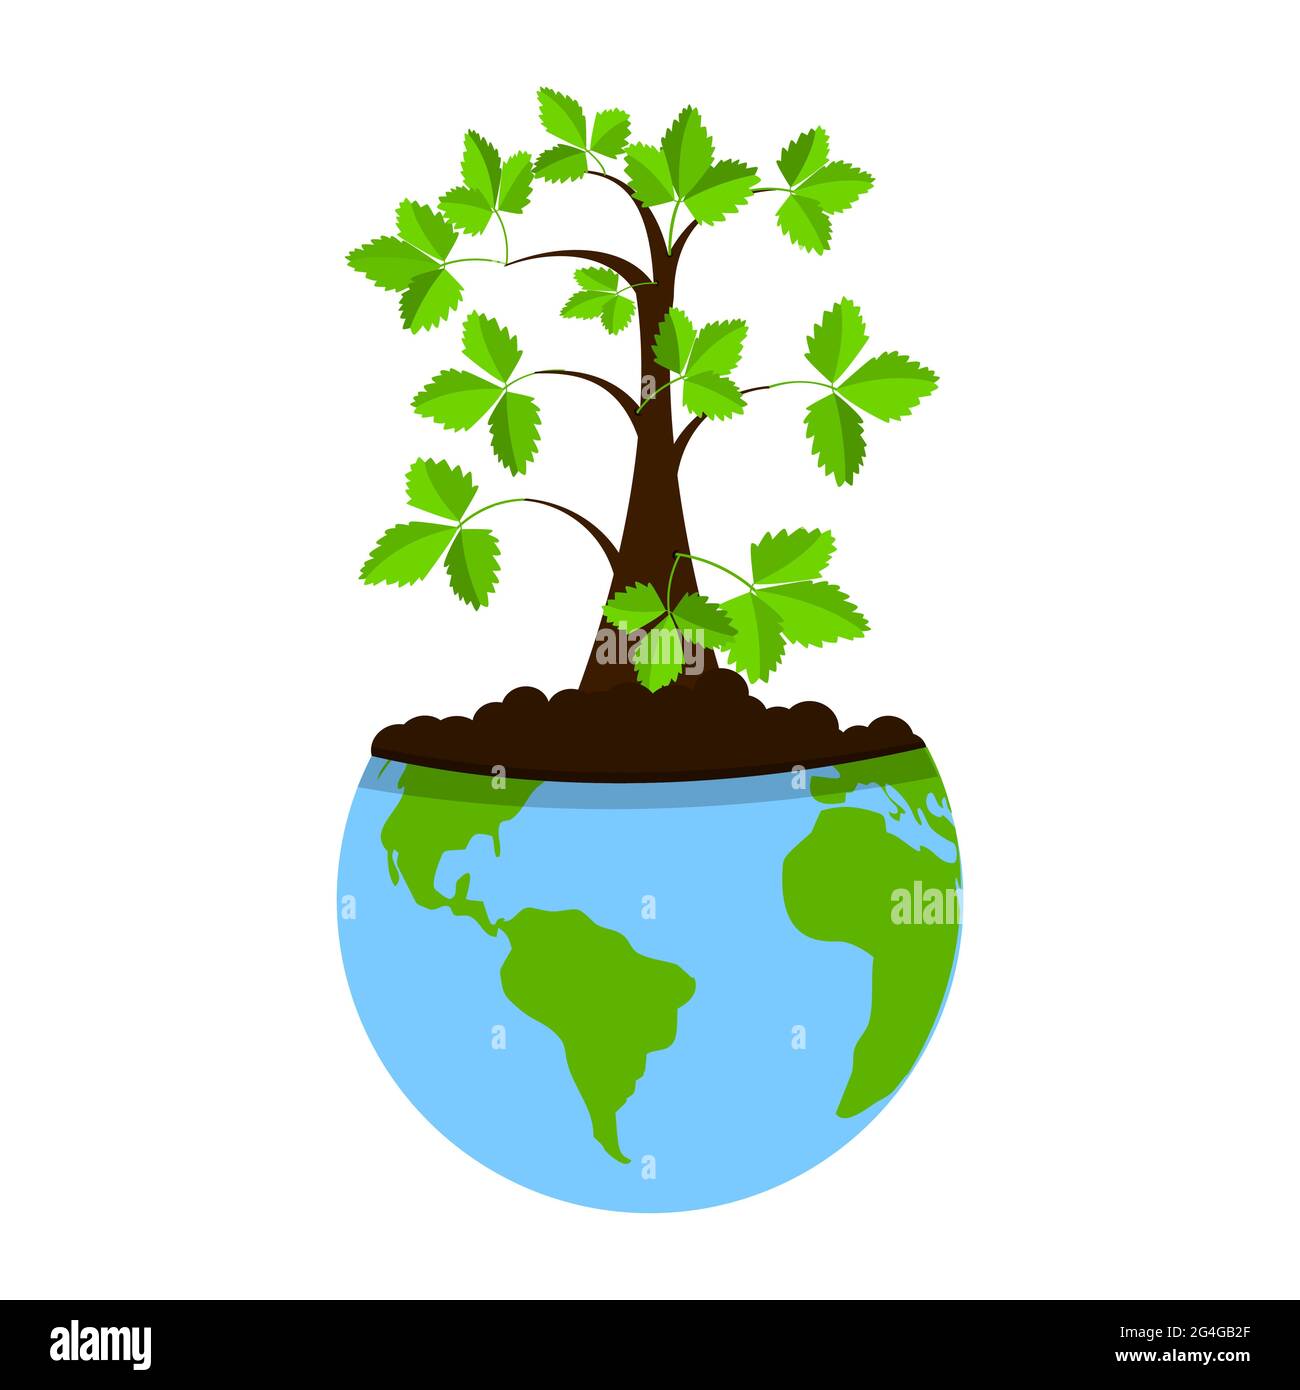 Baum gepflanzt innerhalb des Planeten Erde. Konzept. Metaphorisch. Stock Vektor